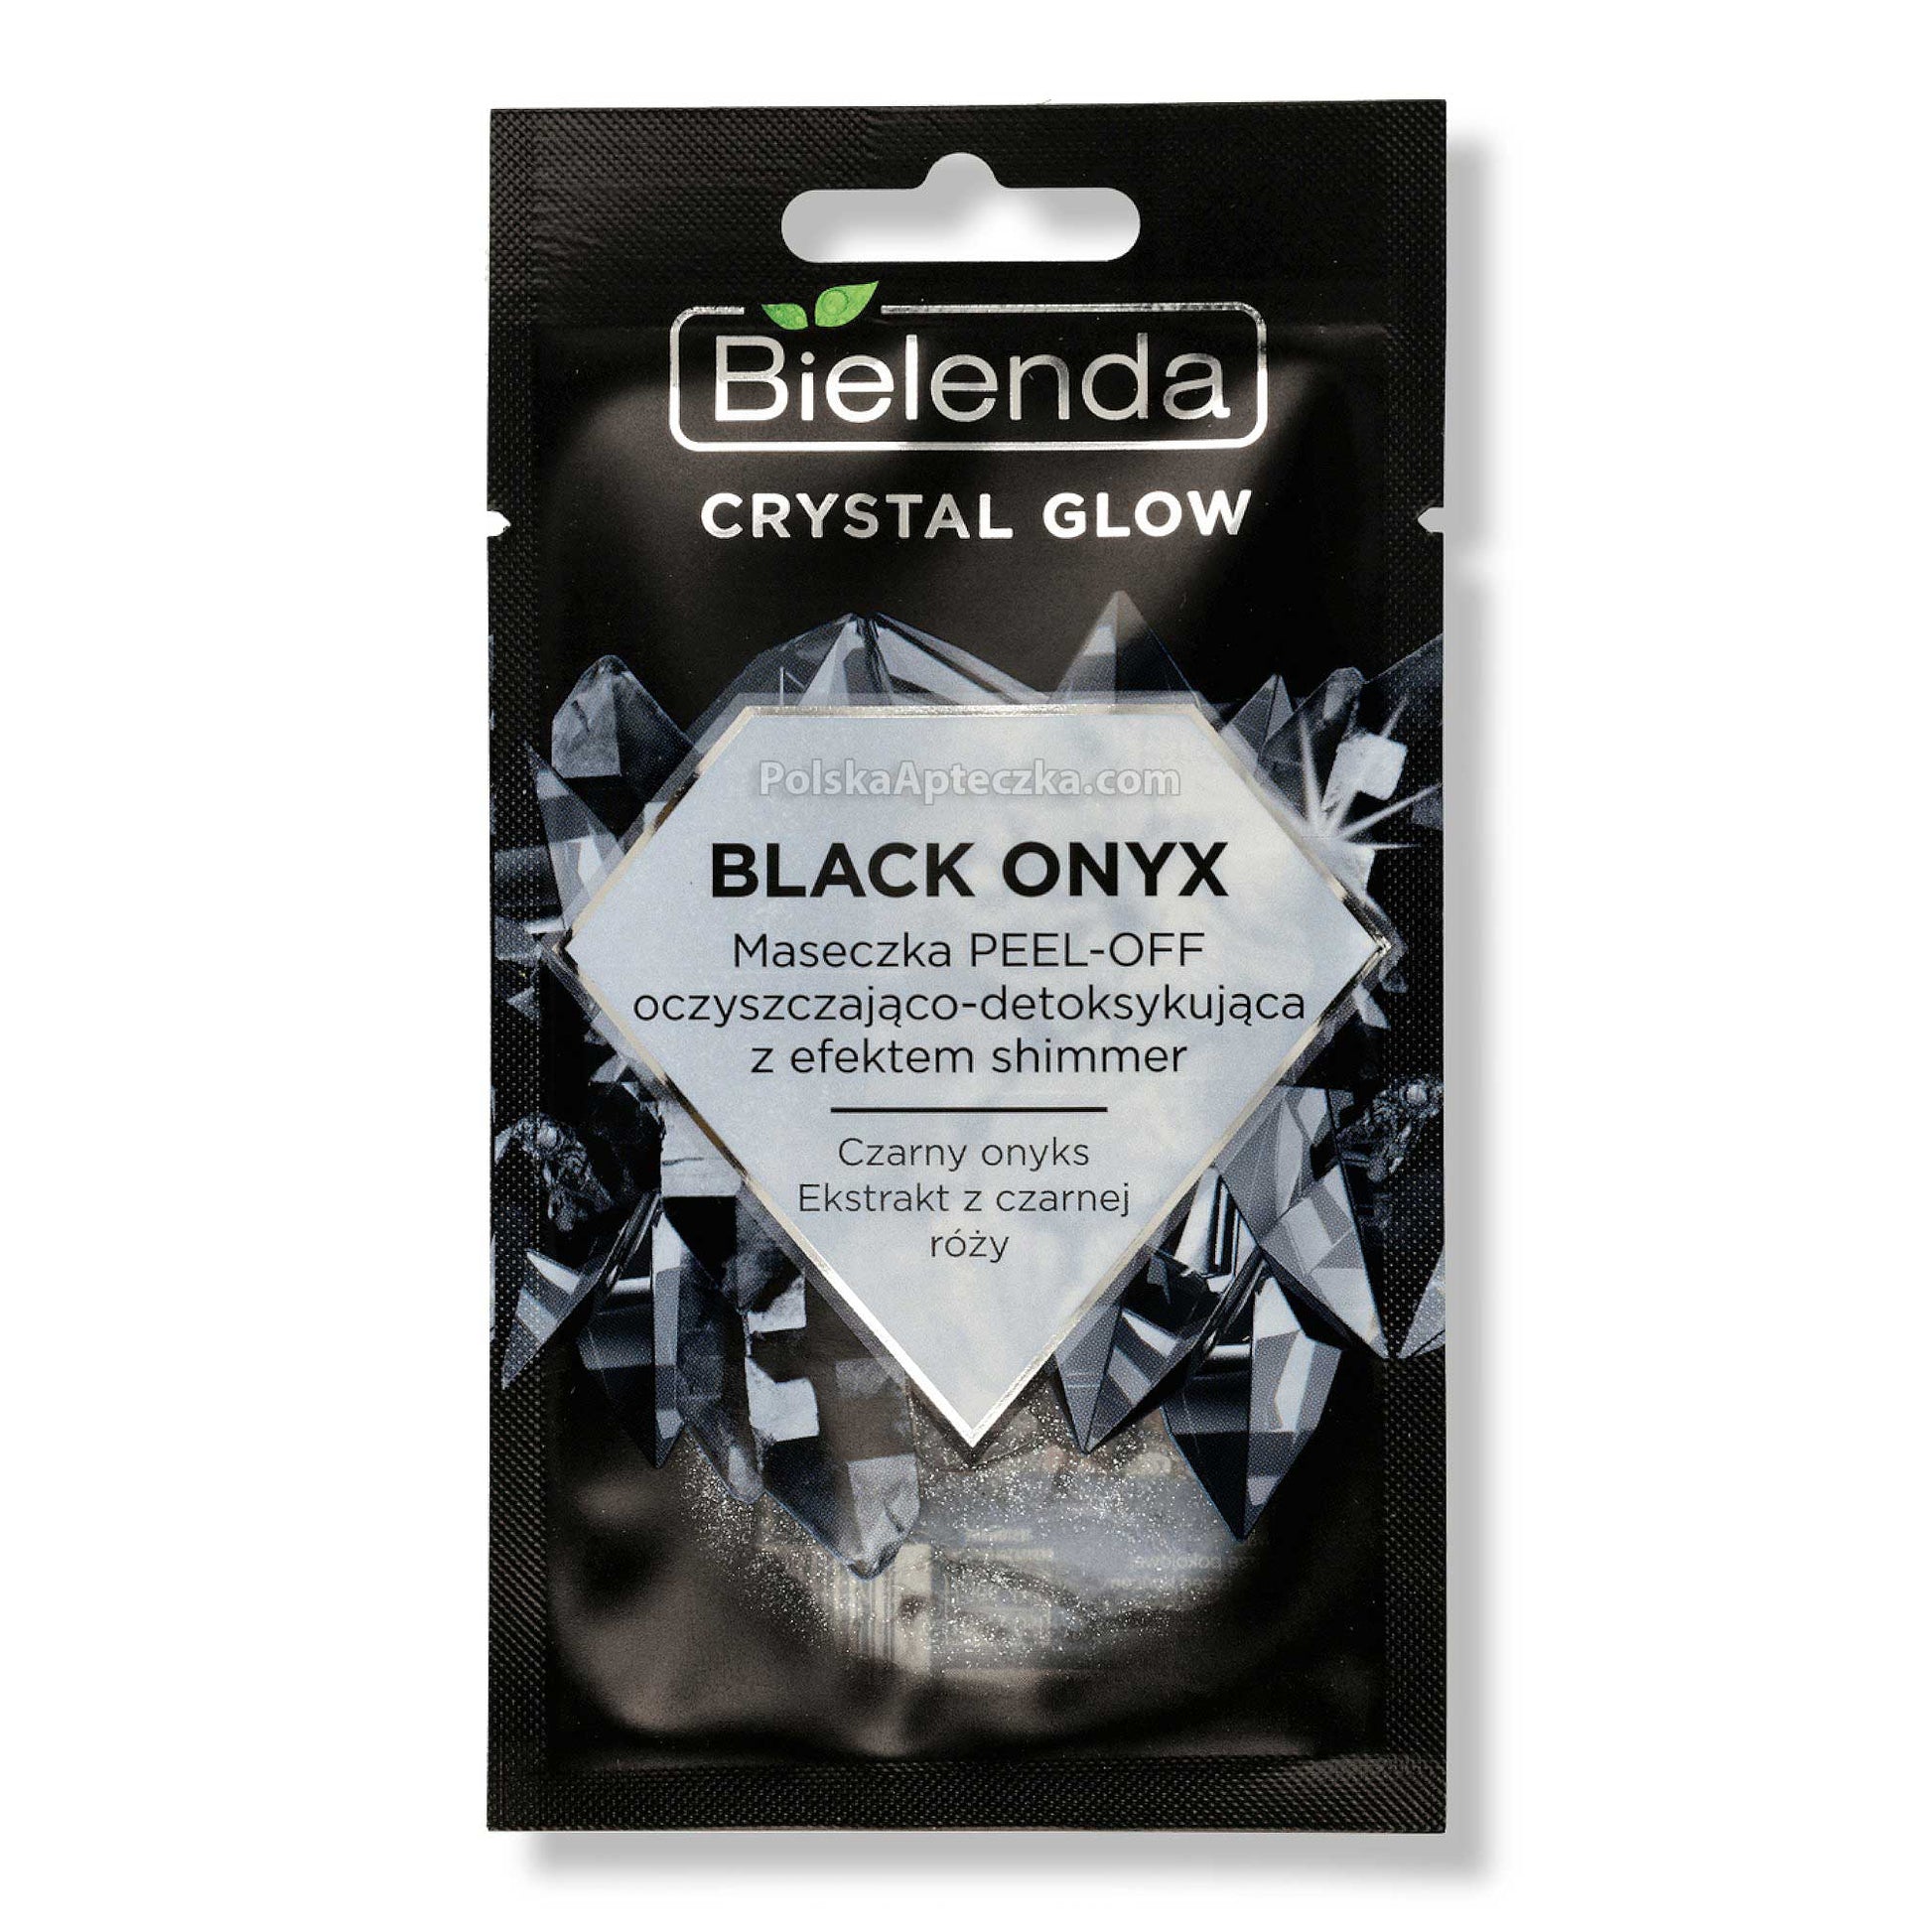 Bielenda, Crystal Glow, Black Onyx maseczka peel-off oczyszczajaco-detoksujaca 8 g